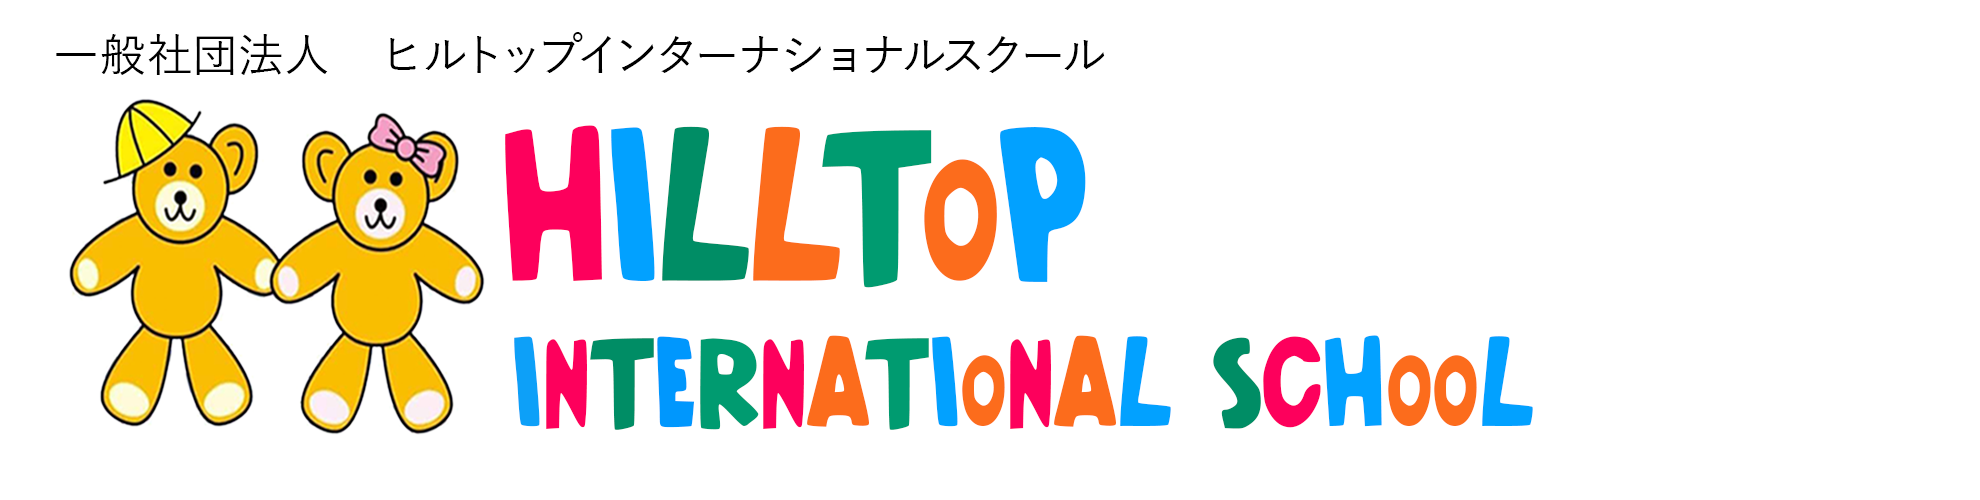 ヒルトップインターナショナルスクール | 熊本 | 英語 | 幼稚園